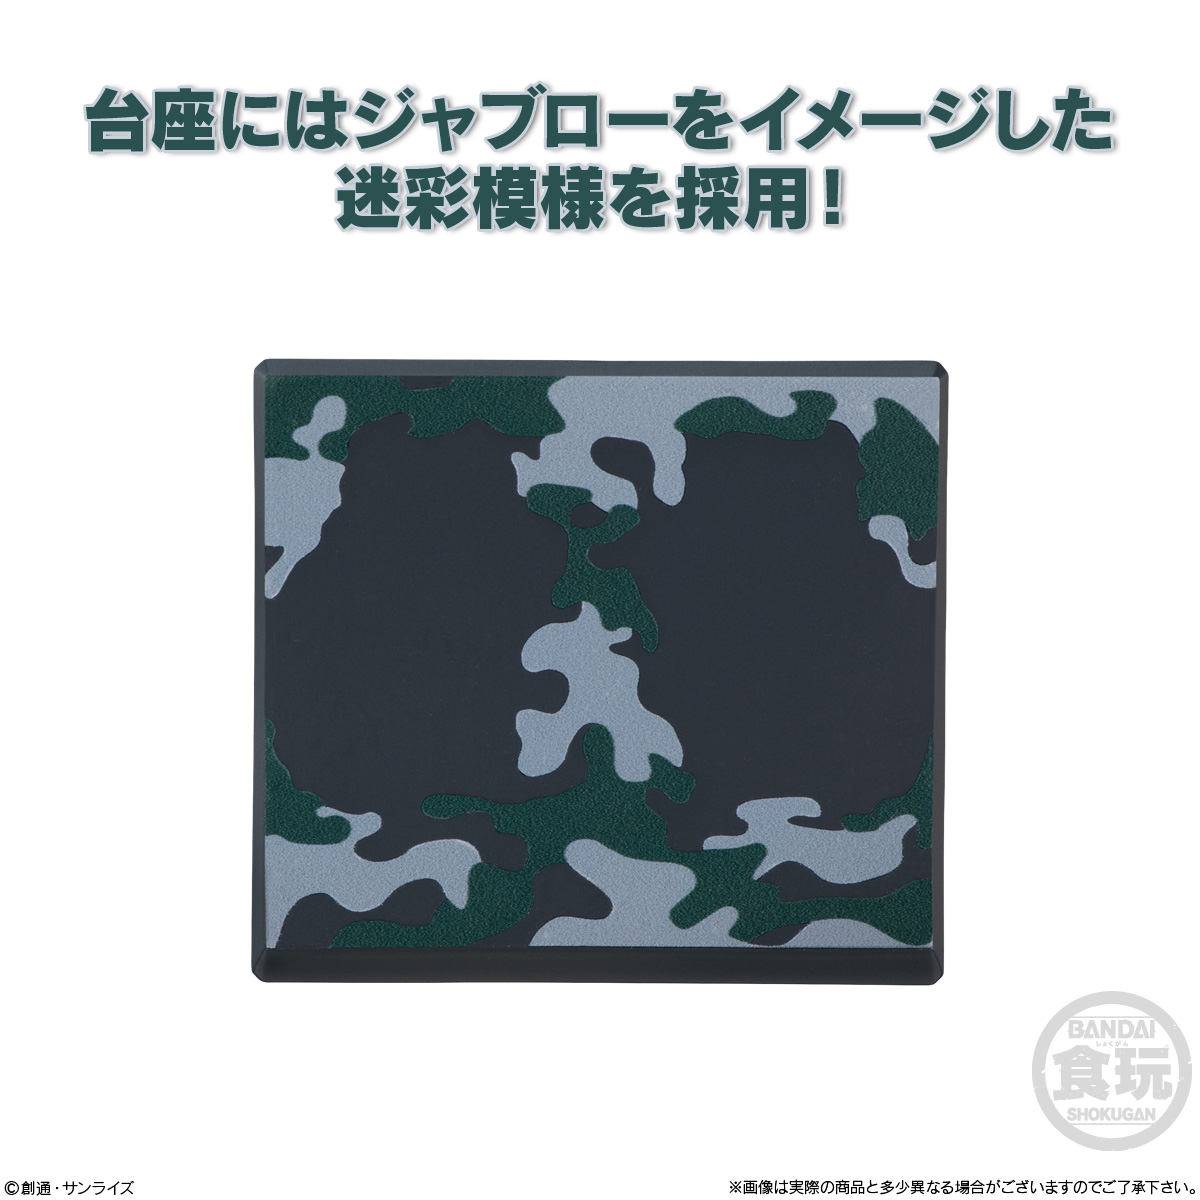 【食玩】機動戦士ガンダム『FW GUNDAM CONVERGE ♯OPERATION JABURO』10個入りBOX-008